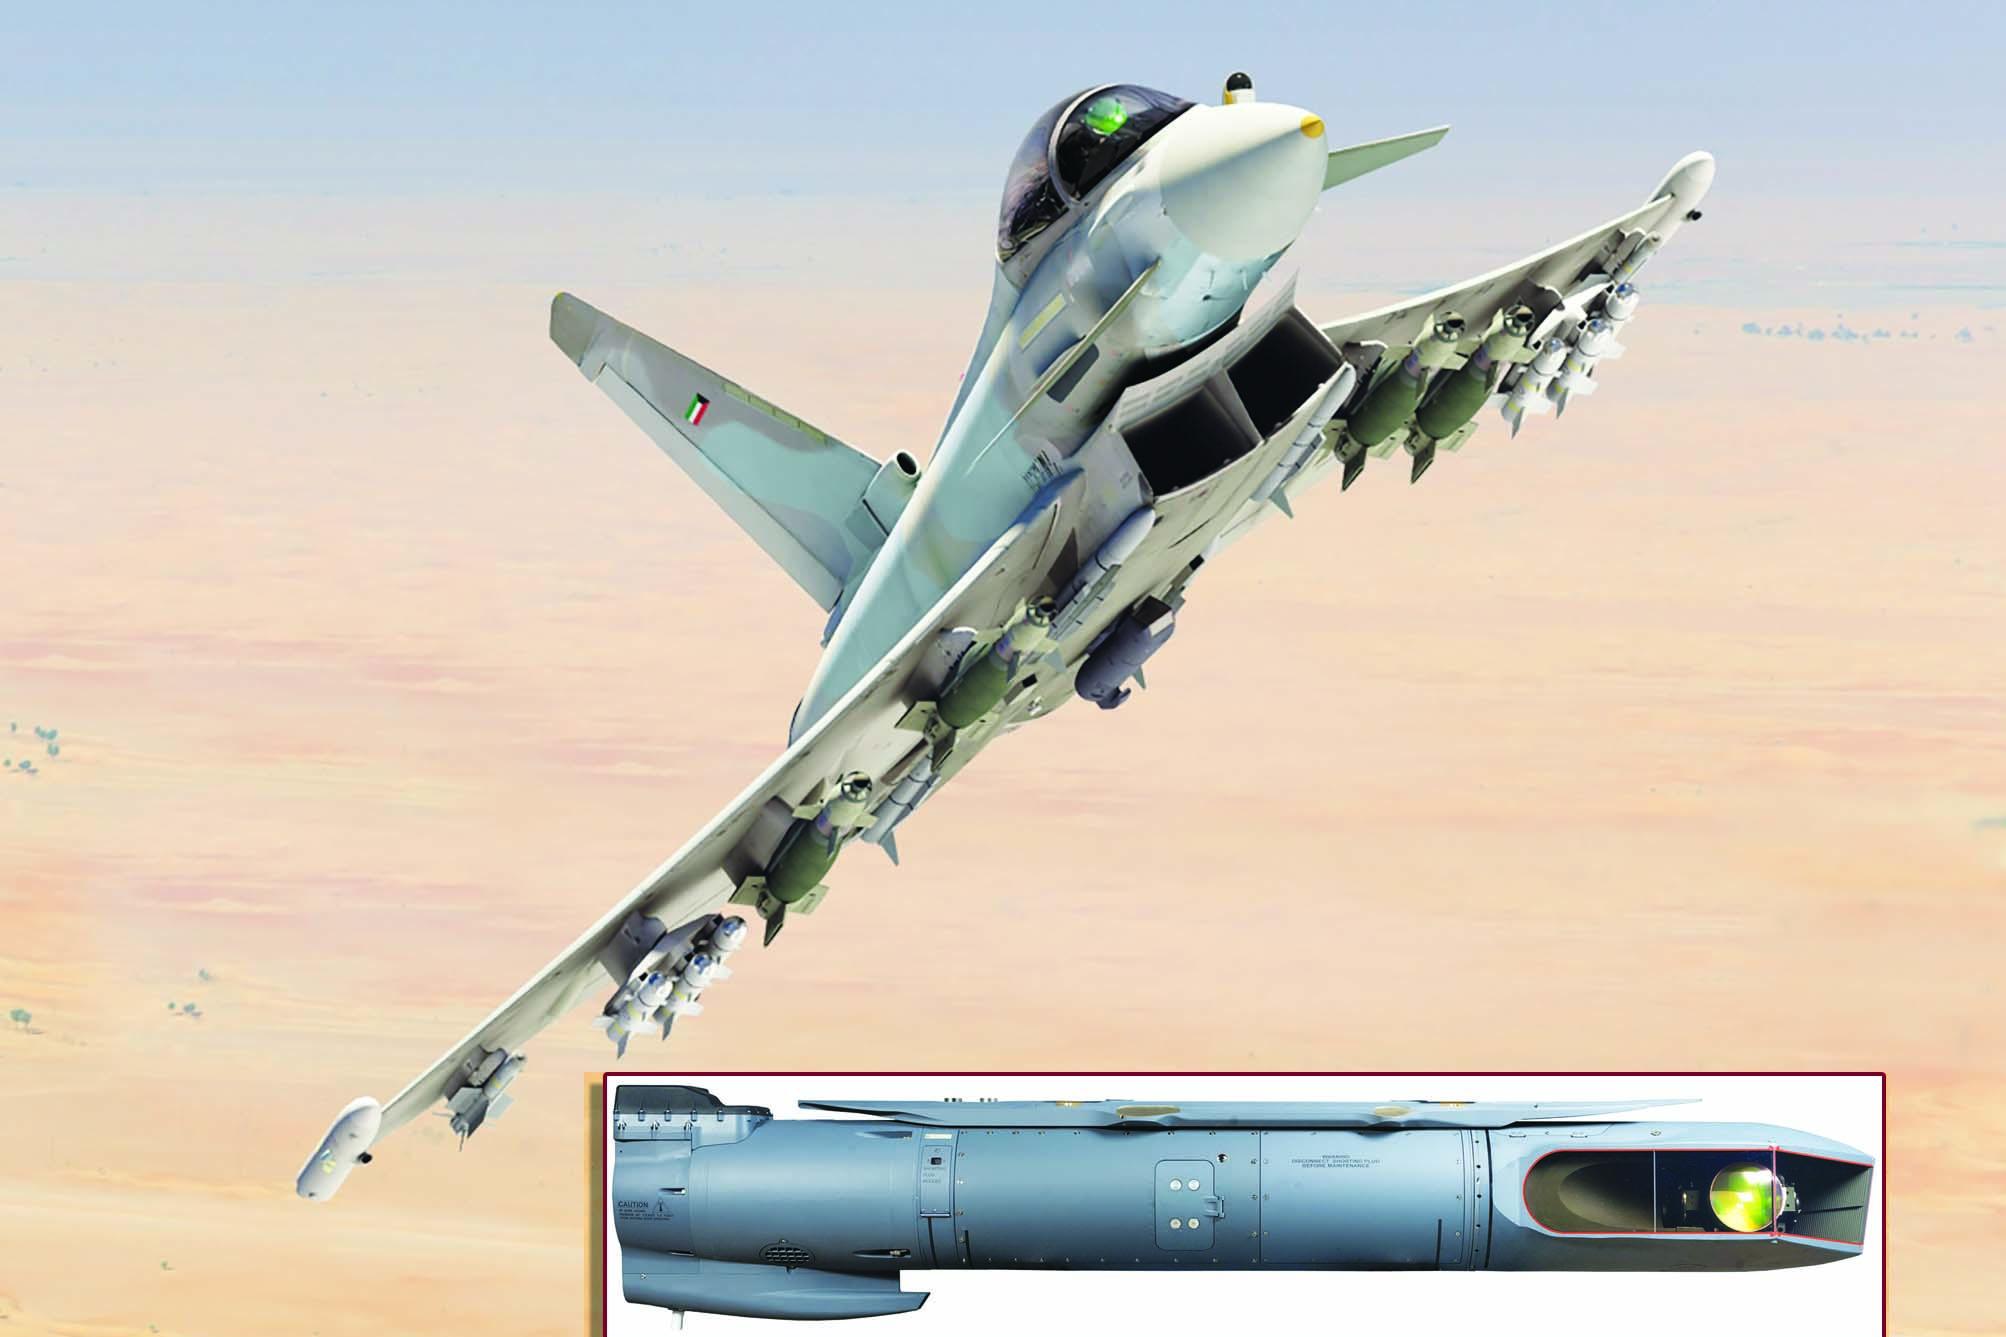 يُشكِّل اختيار سلاح الجو الكويتي لمقاتلة Eurofighter Typhoon و«حاضن التهديف المتقدِّم» Sniper (ATP) من Lockheed Martin (الإطار) الفرصة الأولى لإدماج هذا الحاضن على المقاتلة المذكورة